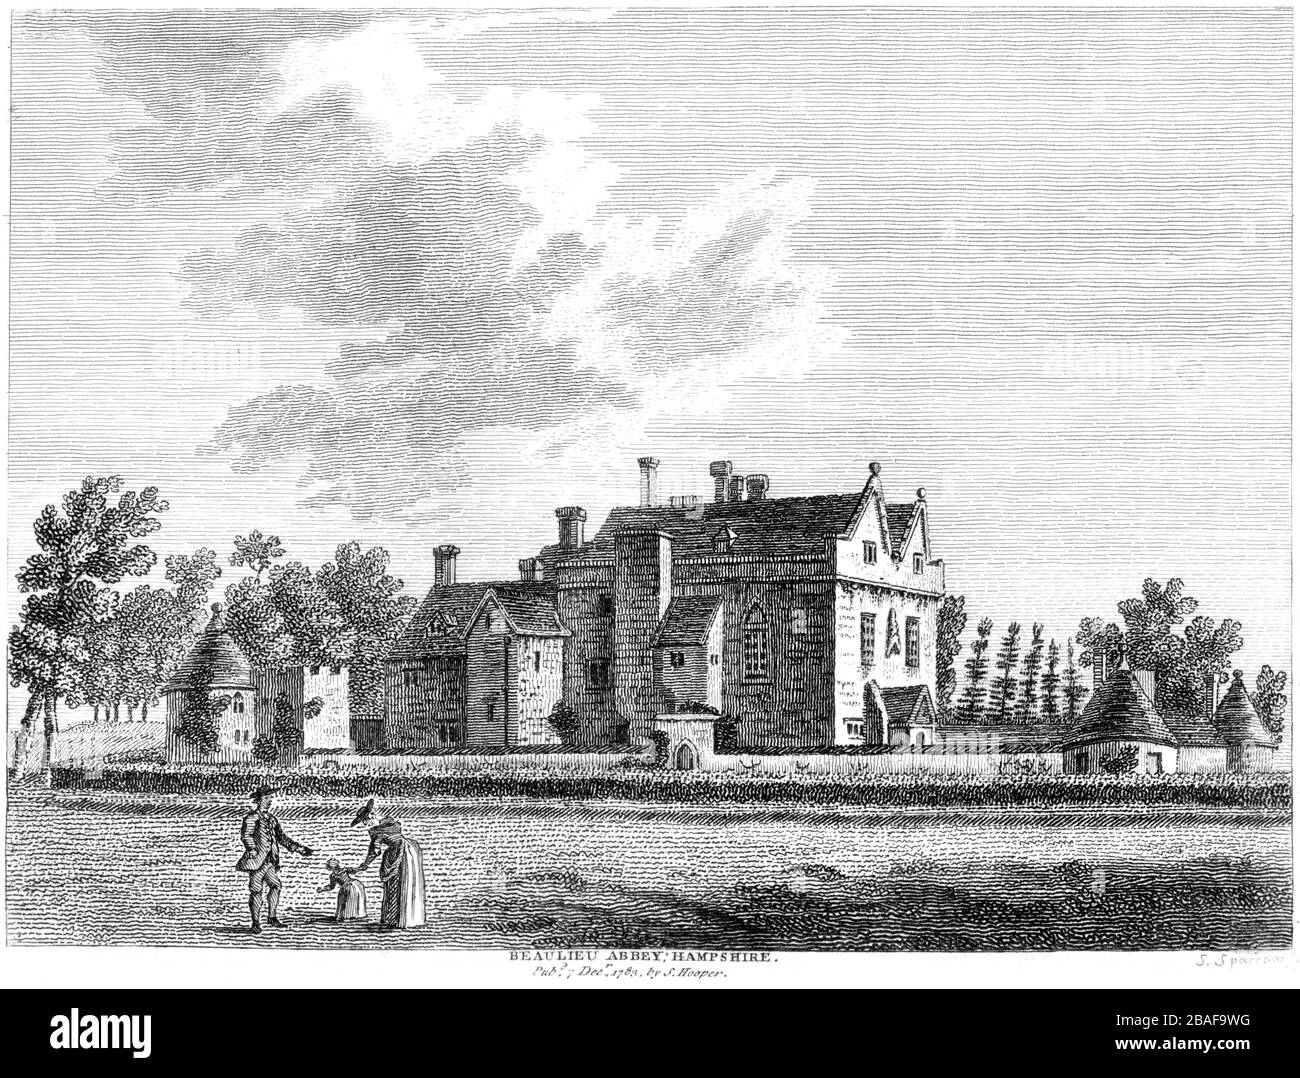 Incisione di Beaulieu Abbey Hampshire 1783 scannerizzato ad alta risoluzione da un libro pubblicato intorno al 1786. Si ritiene che questa immagine sia libera da tutti i diritti d'autore. Foto Stock